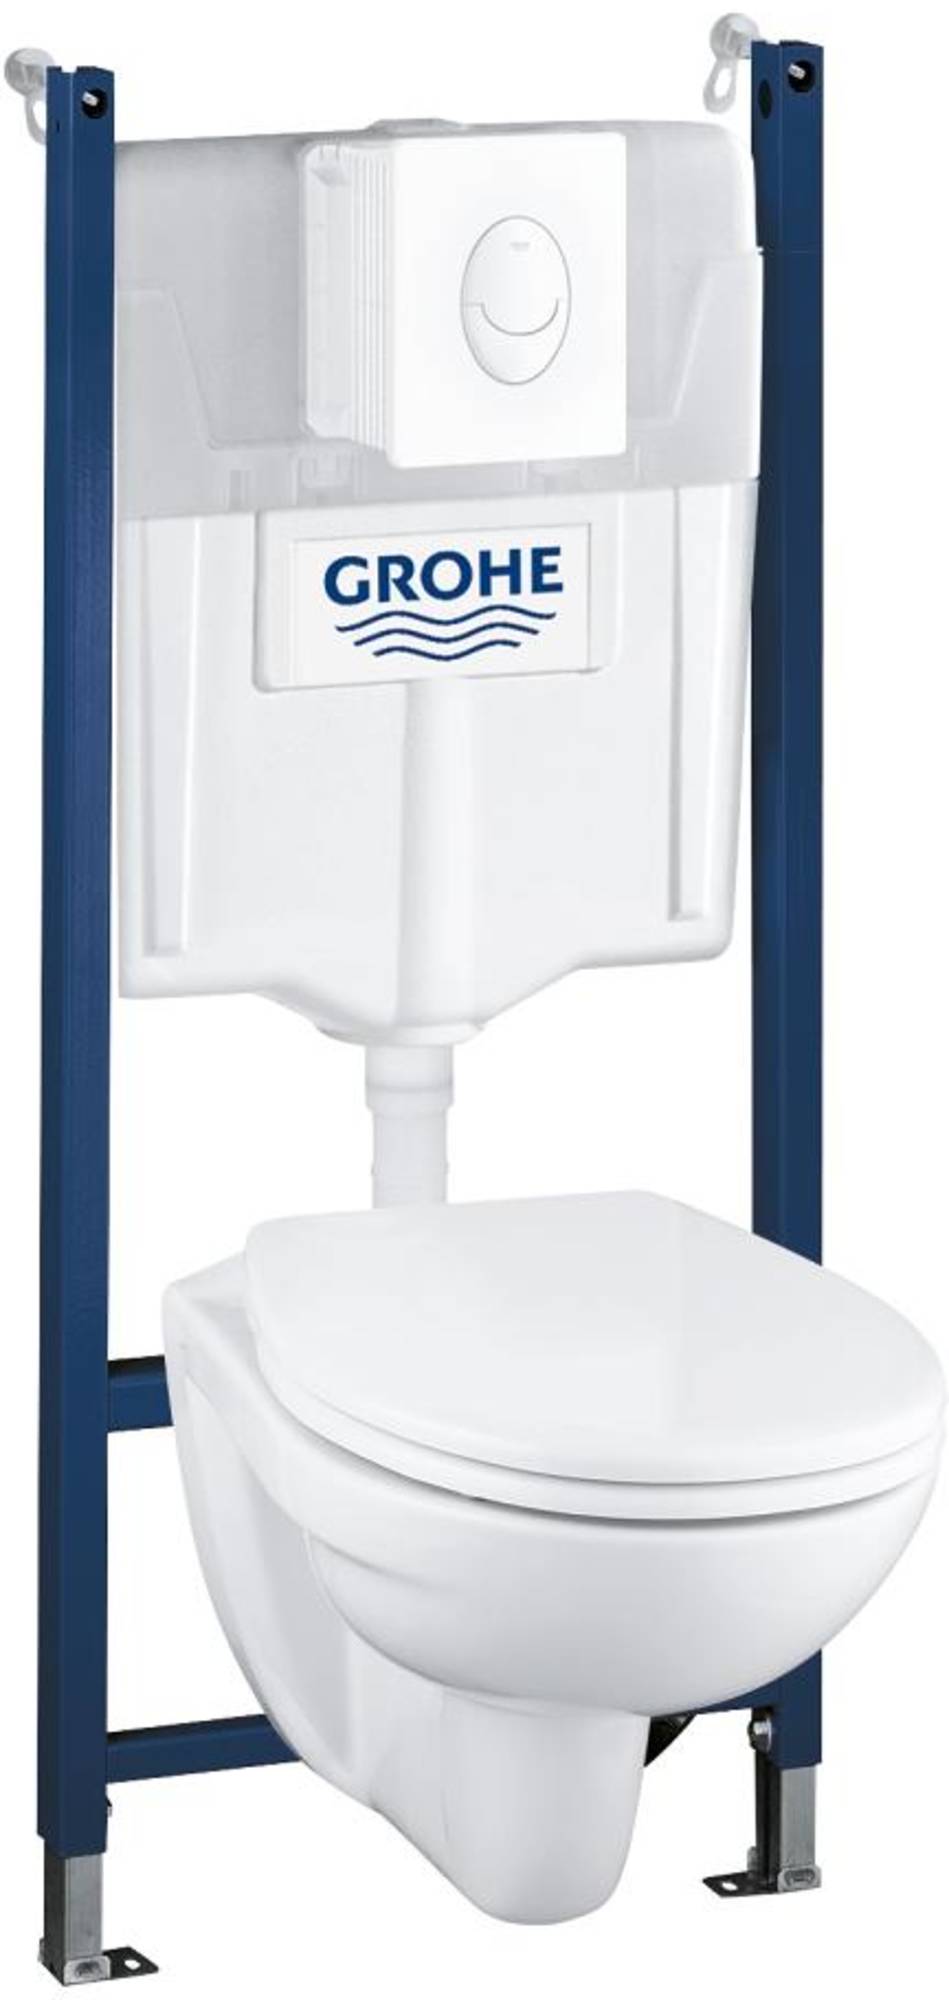 Grohe QuickFix Lecico Perth toiletset met hangtoilet wit bedieningspaneel en Rapid SL inbouwreservoir